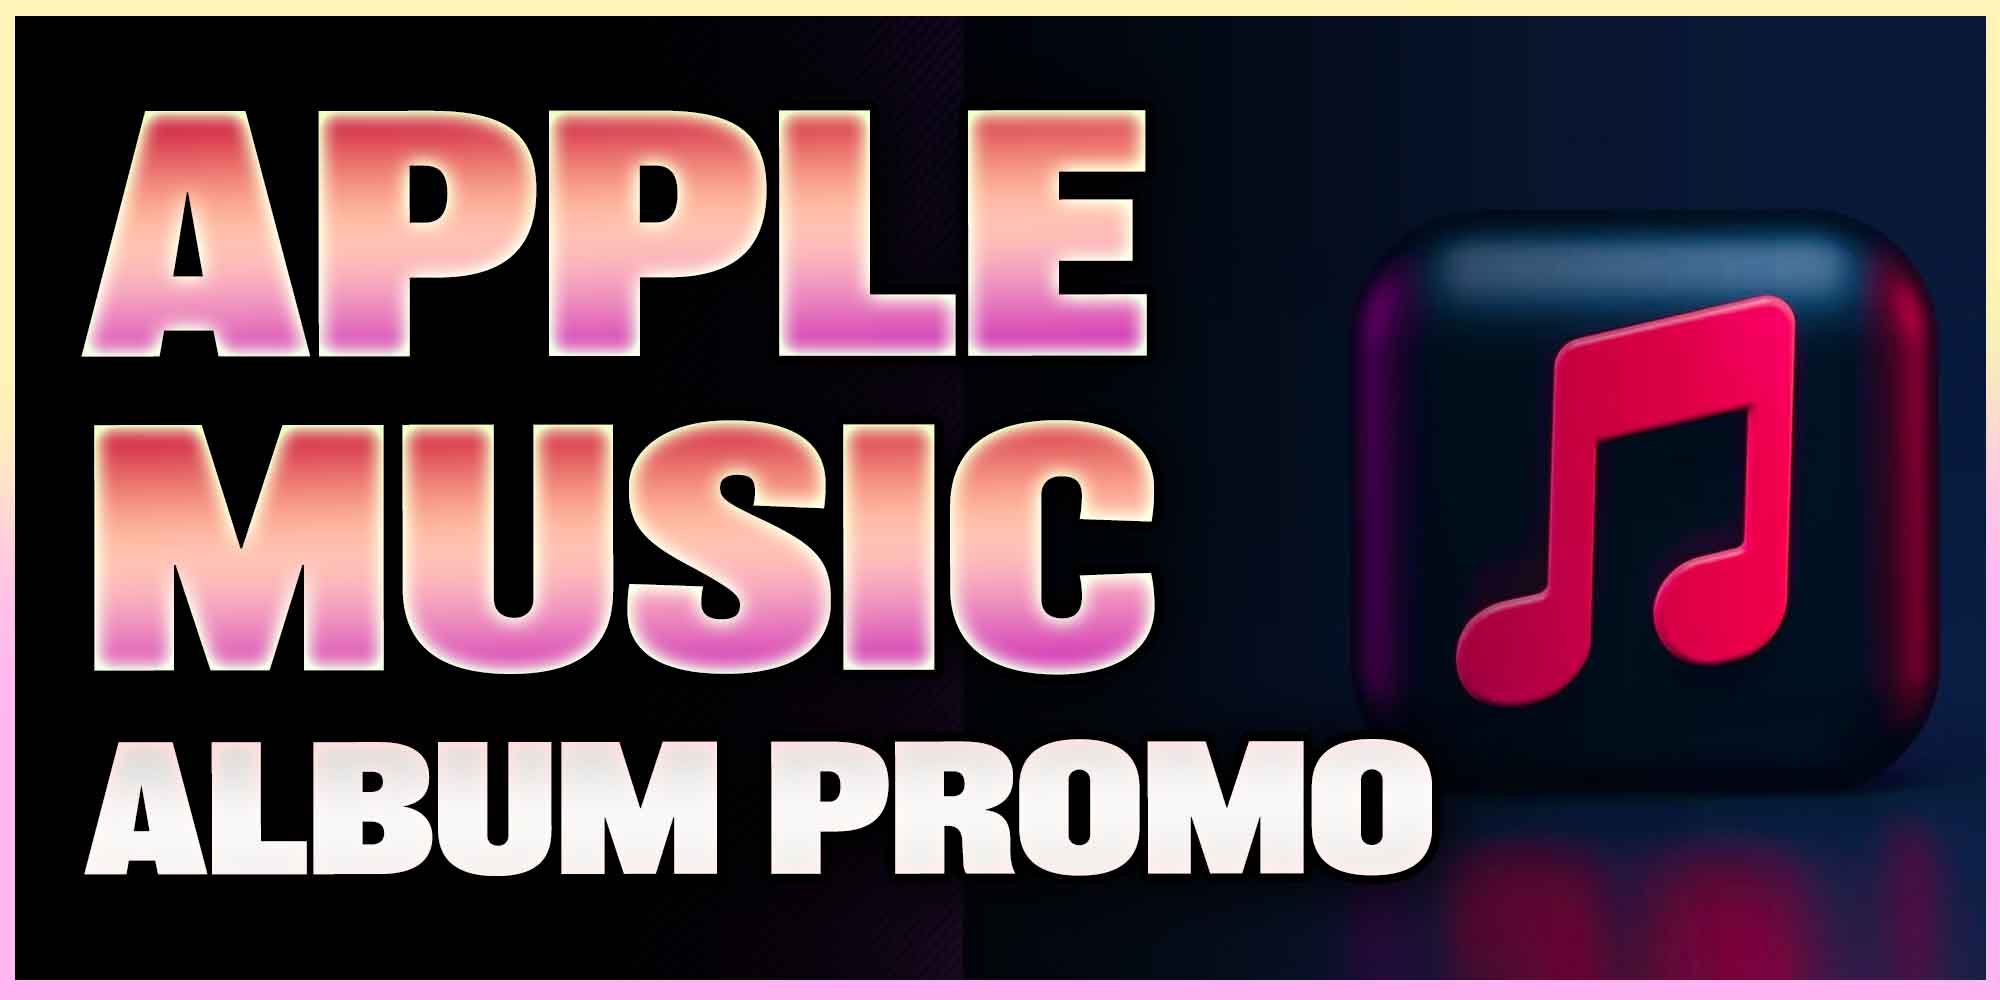 Apple Music Album Promotion